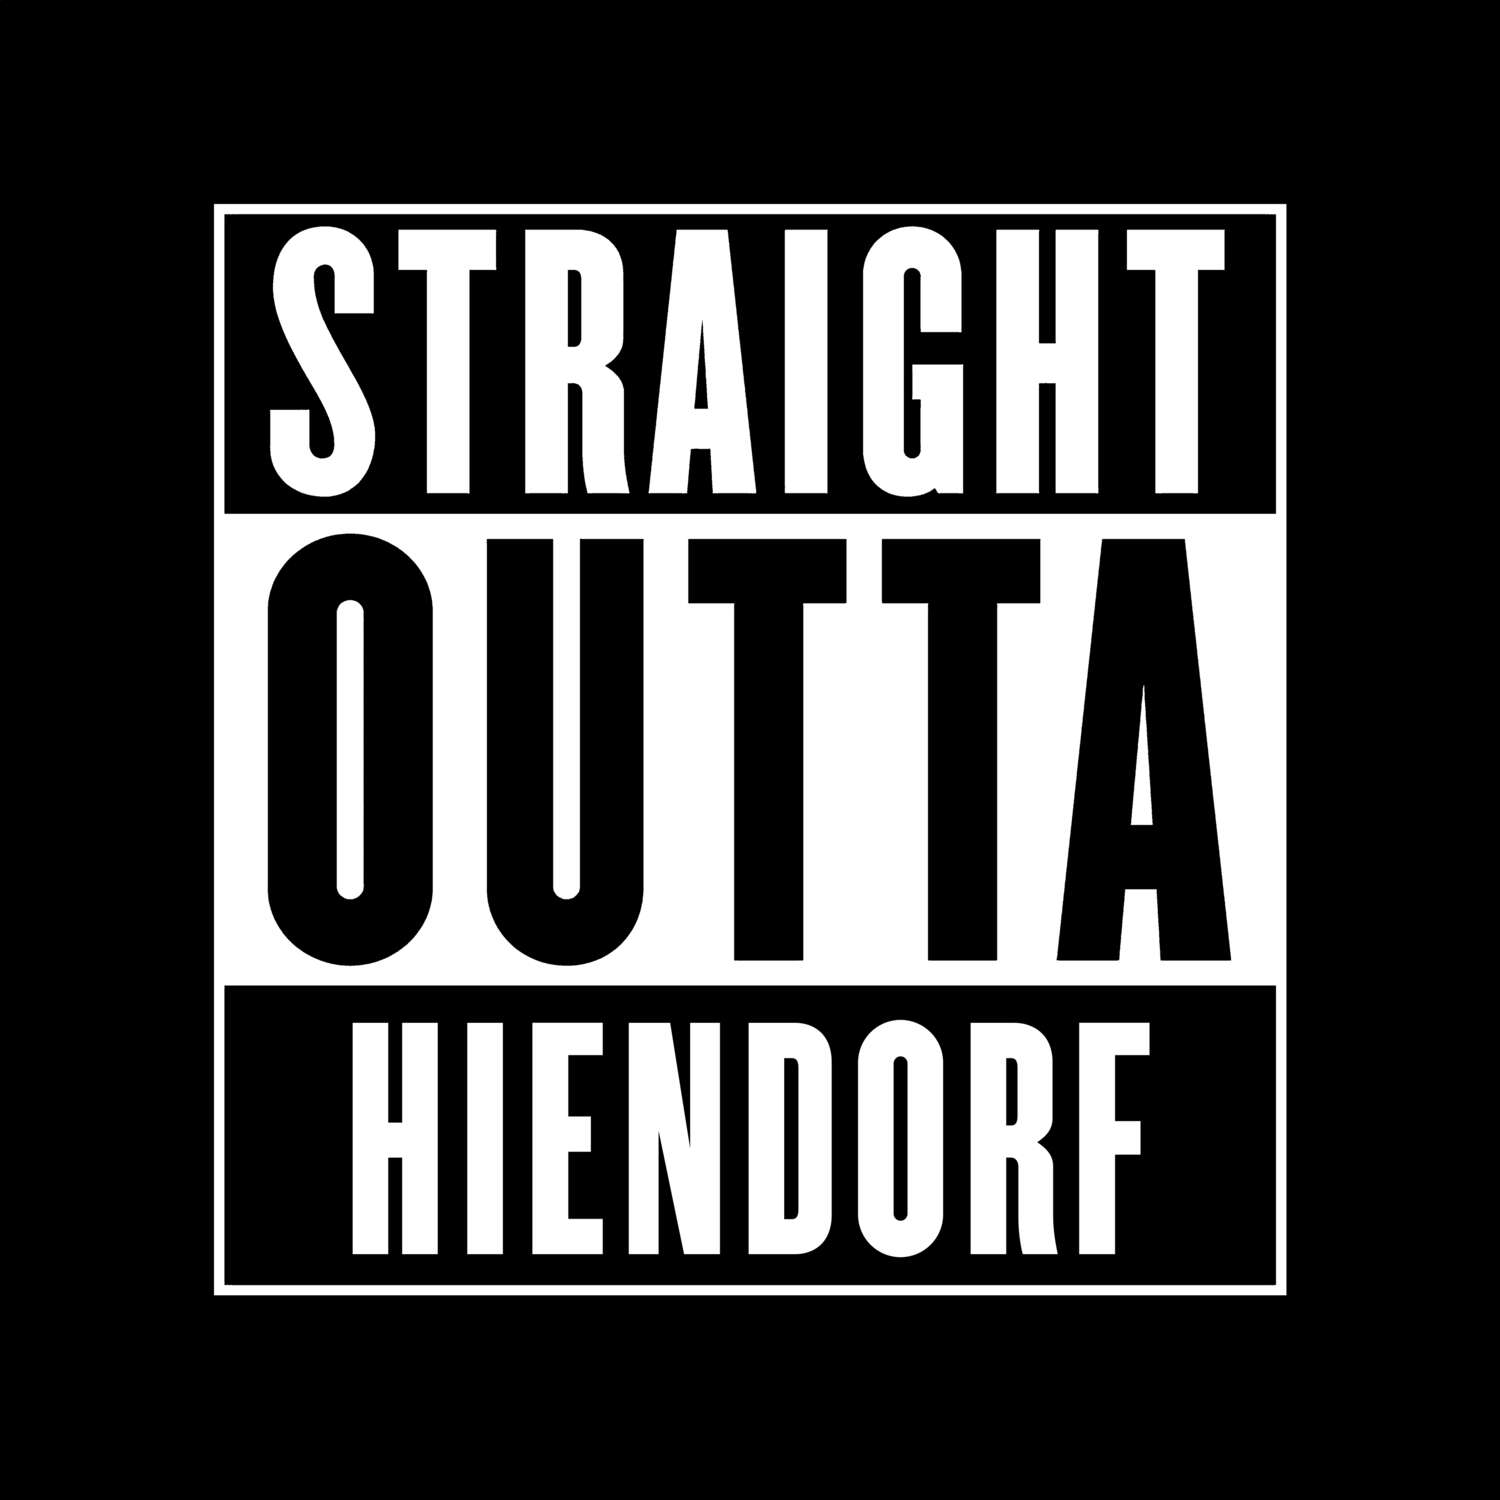 Hiendorf T-Shirt »Straight Outta«